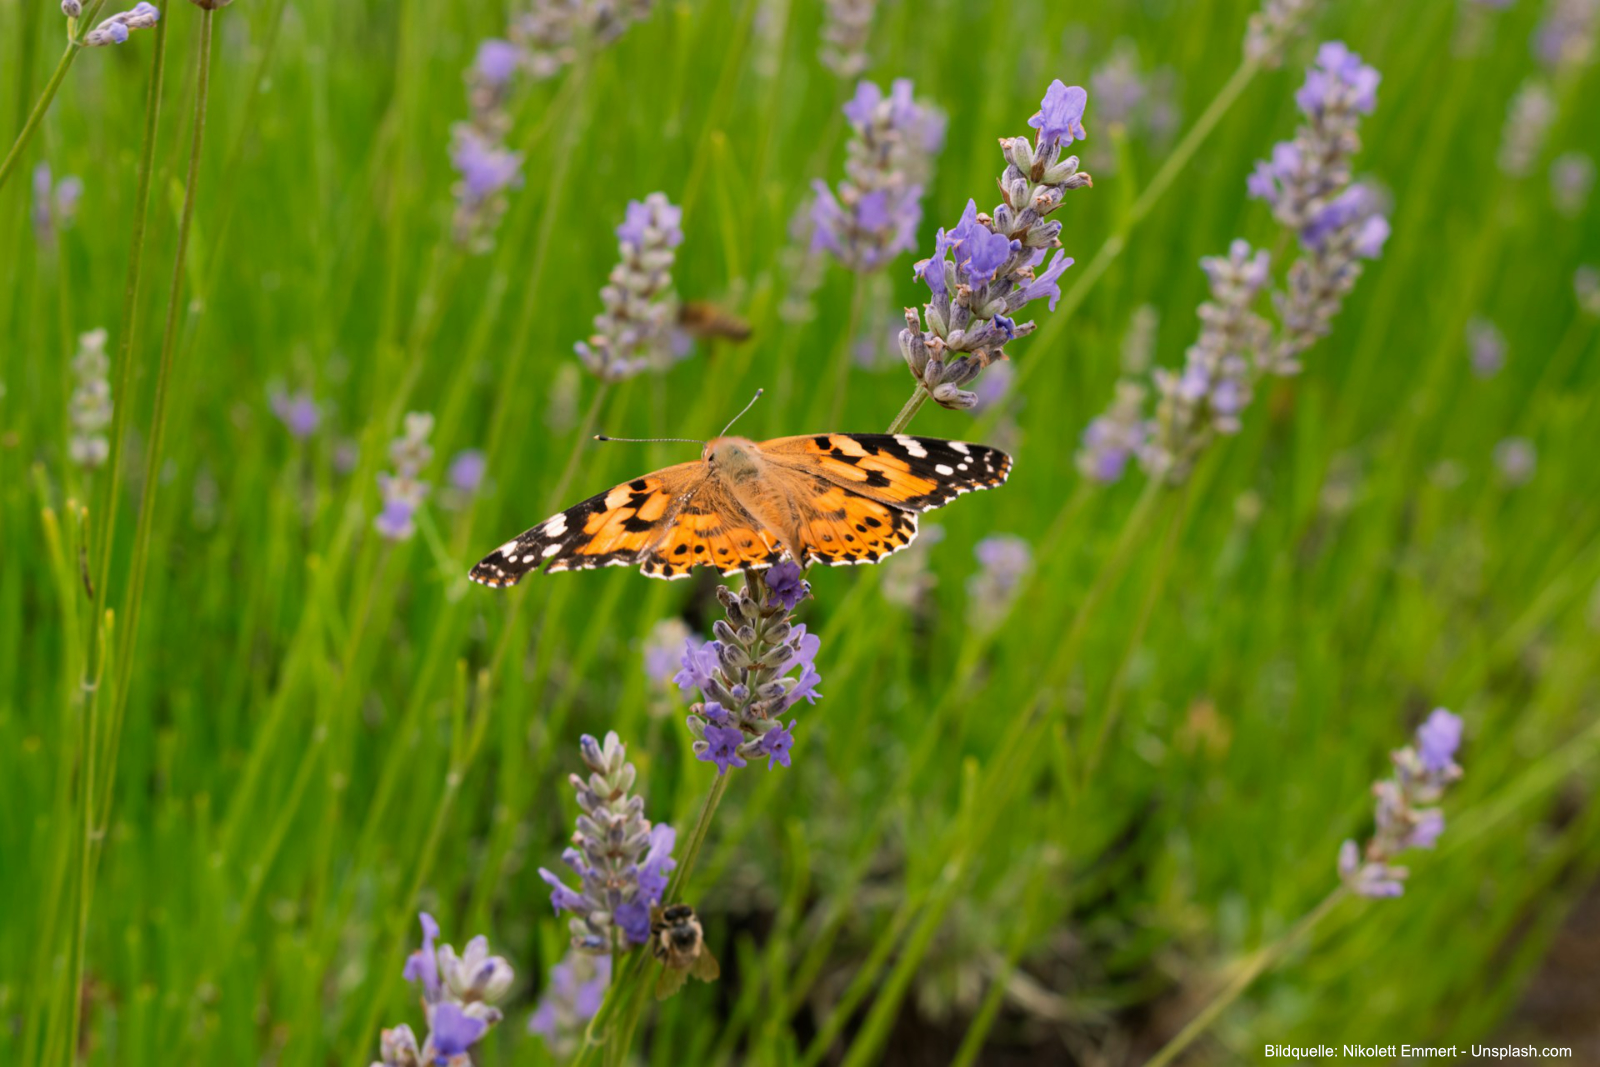 
Lavendel zieht mit seinen duftenden Blüten viele Schmetterlinge, Bienen und Hummeln an.